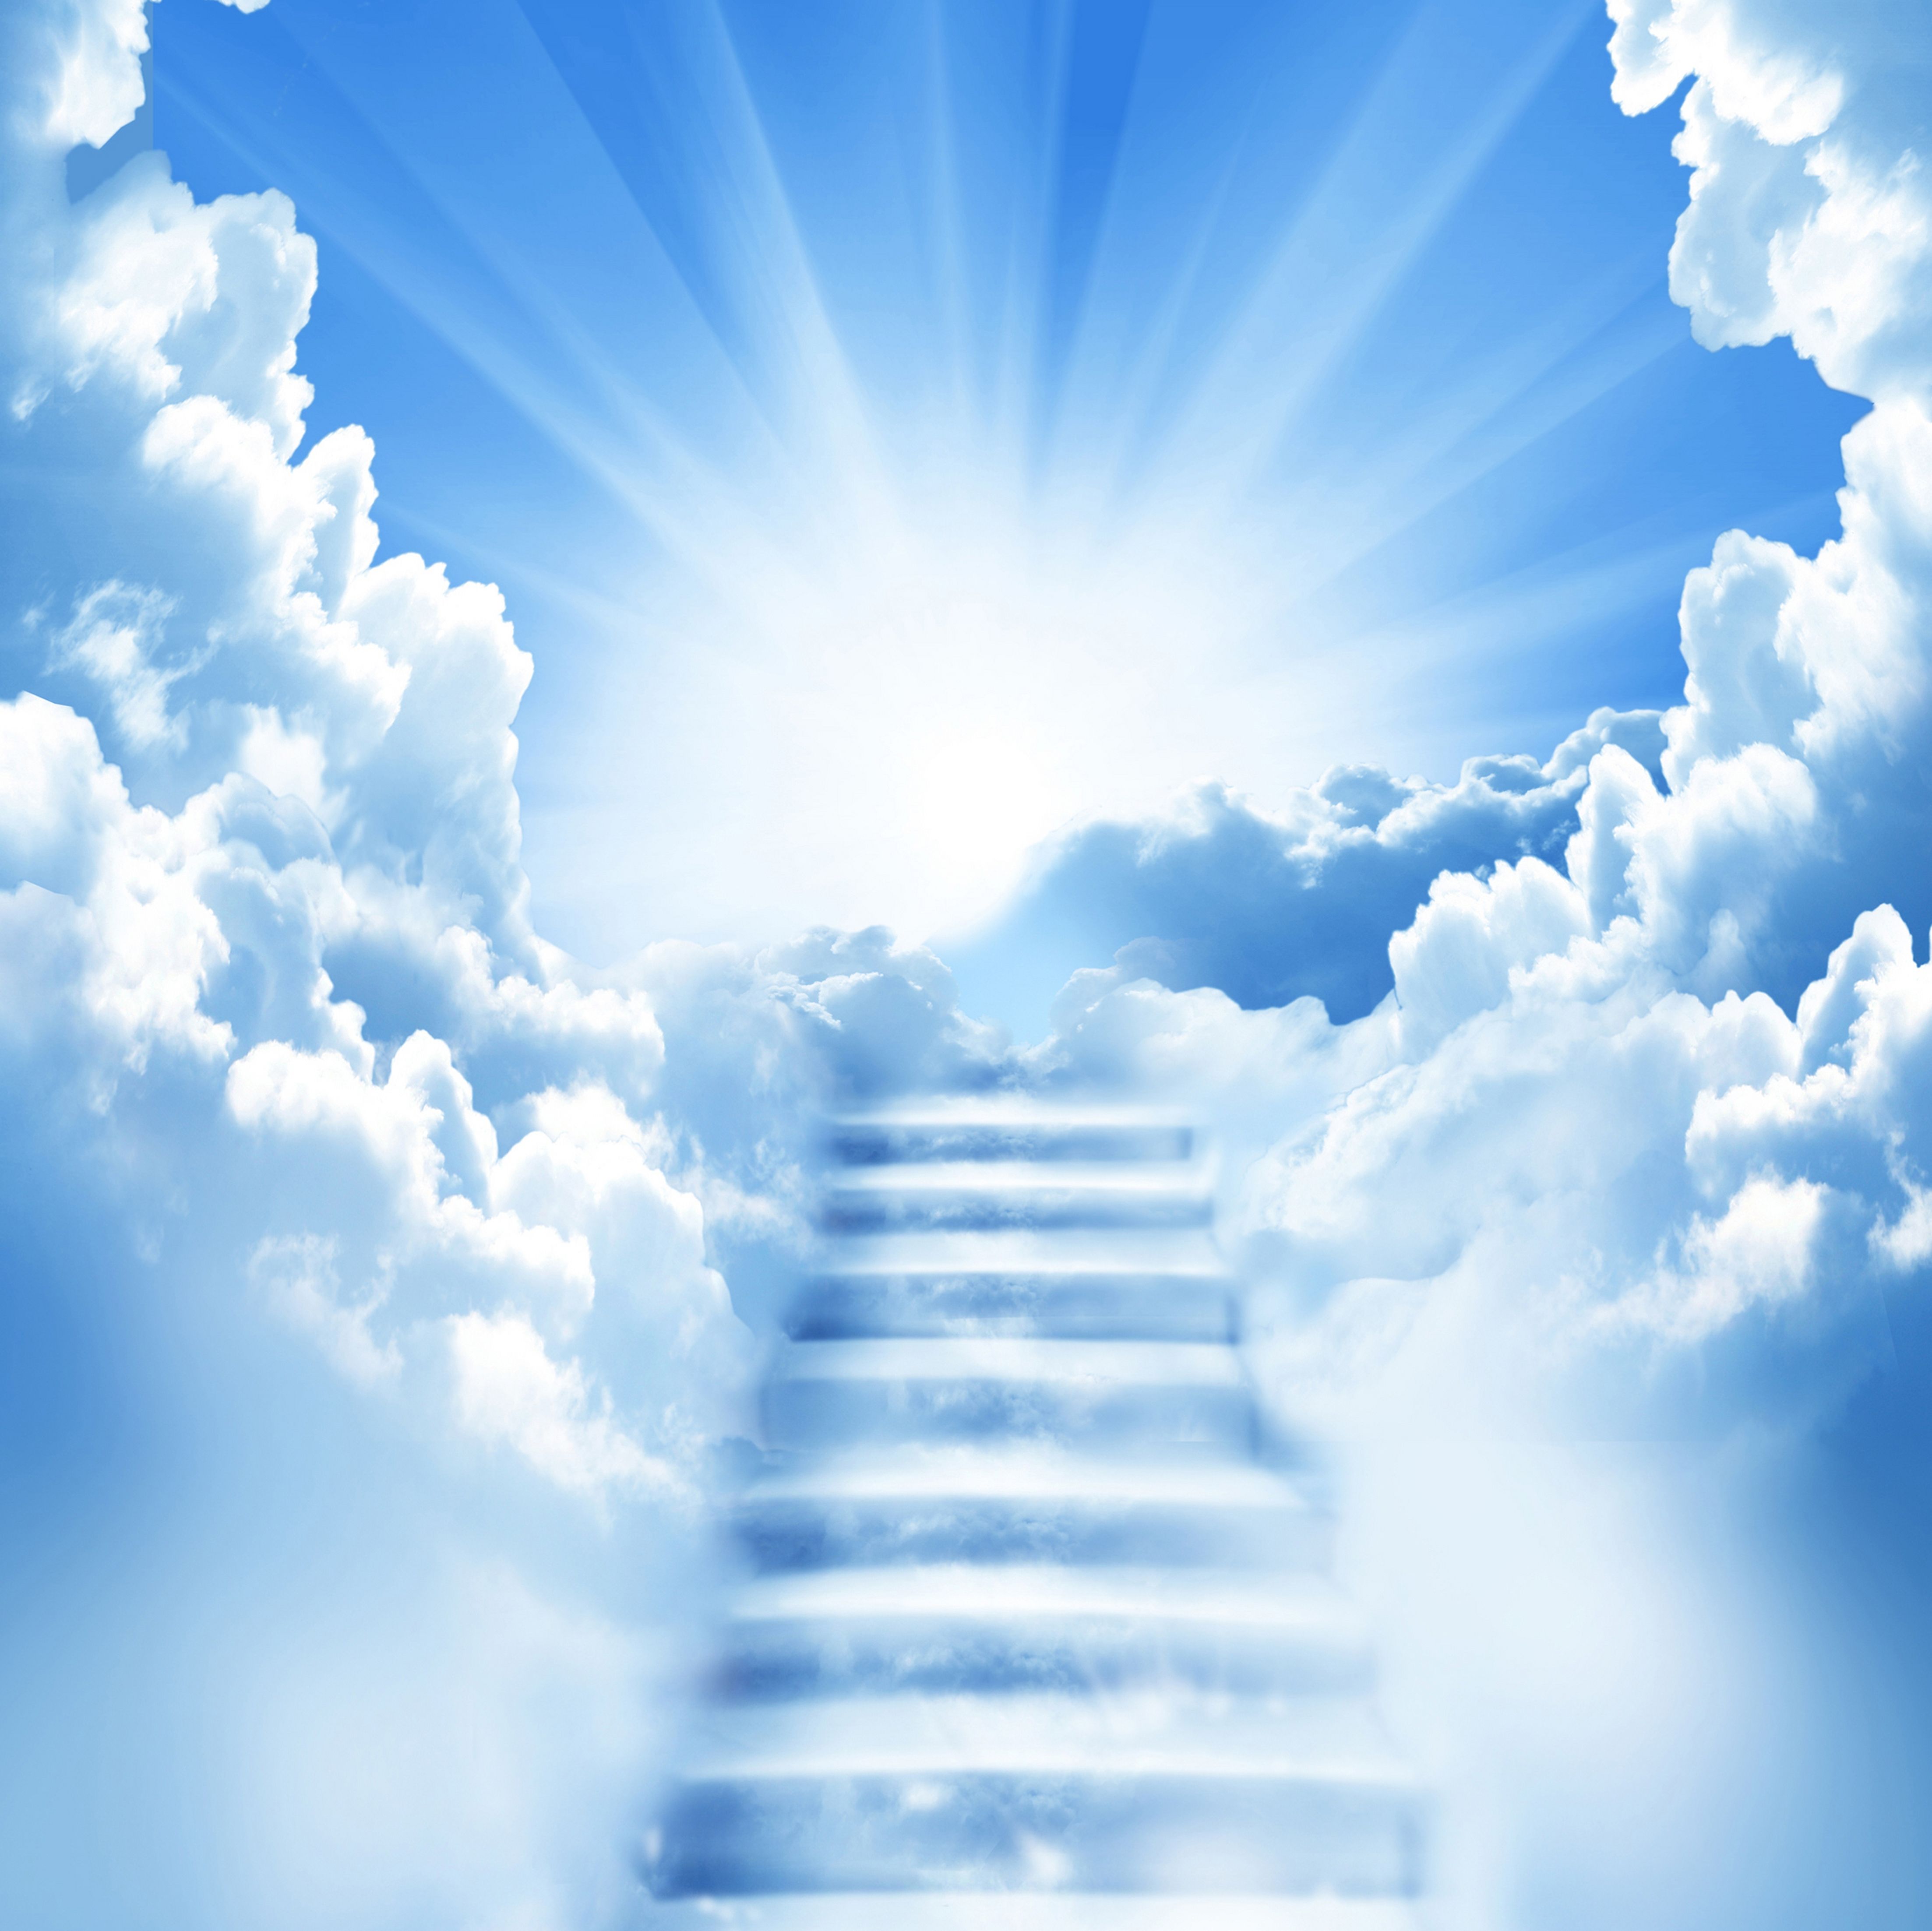 Stairway to Nectar Heaven Desktop Wallpapers